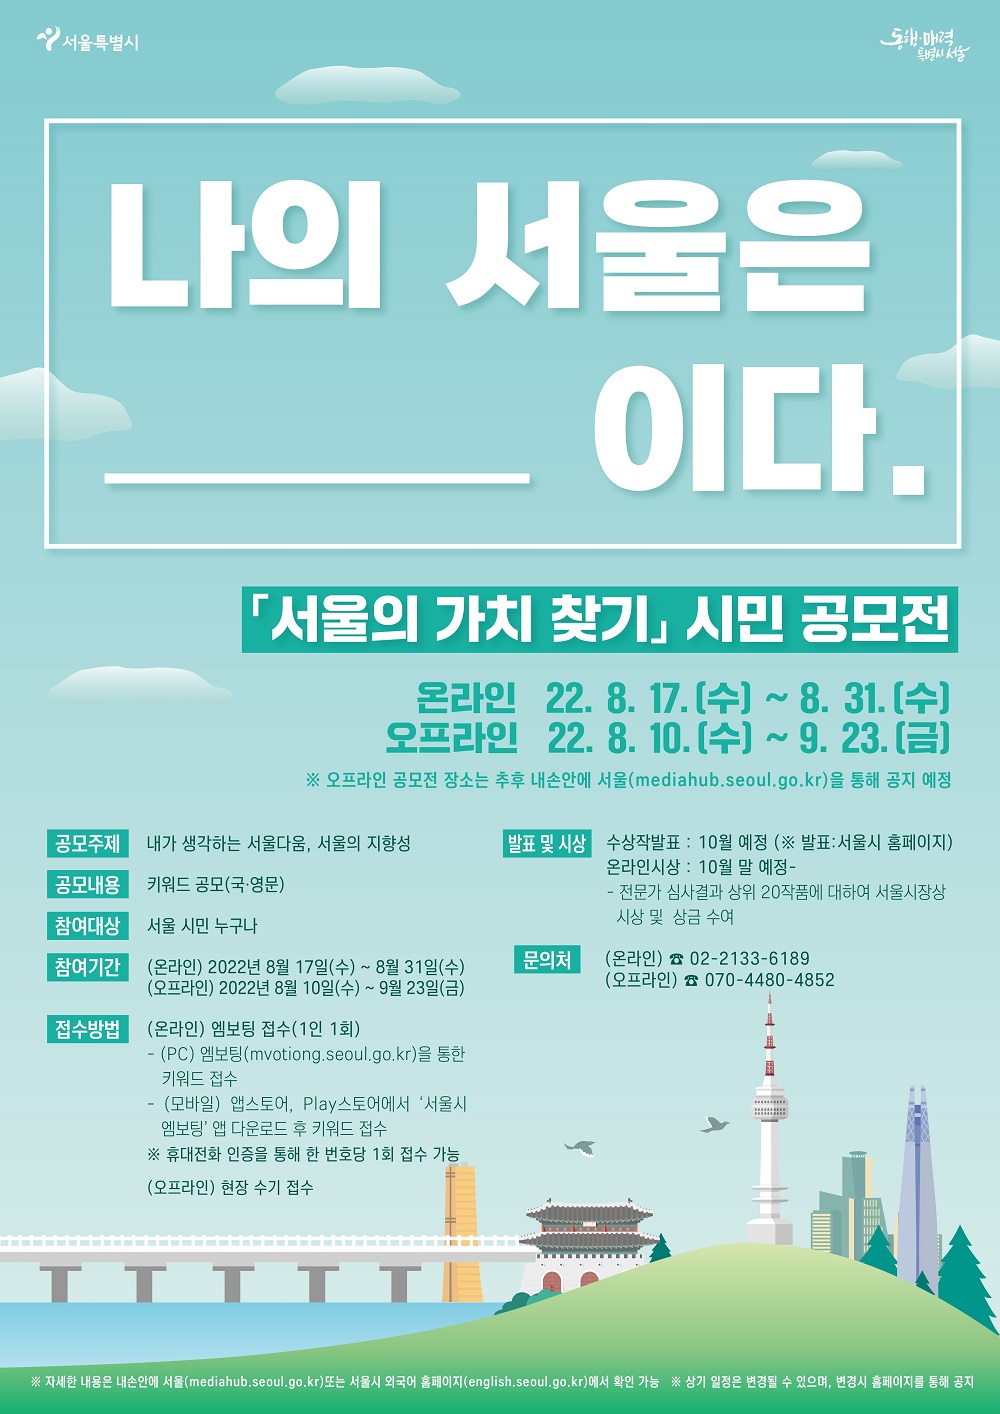 서울시가 새로운 도시브랜드 개발을 시작하면서, ‘서울의 가치찾기 시민 공모전’을 진행한다.